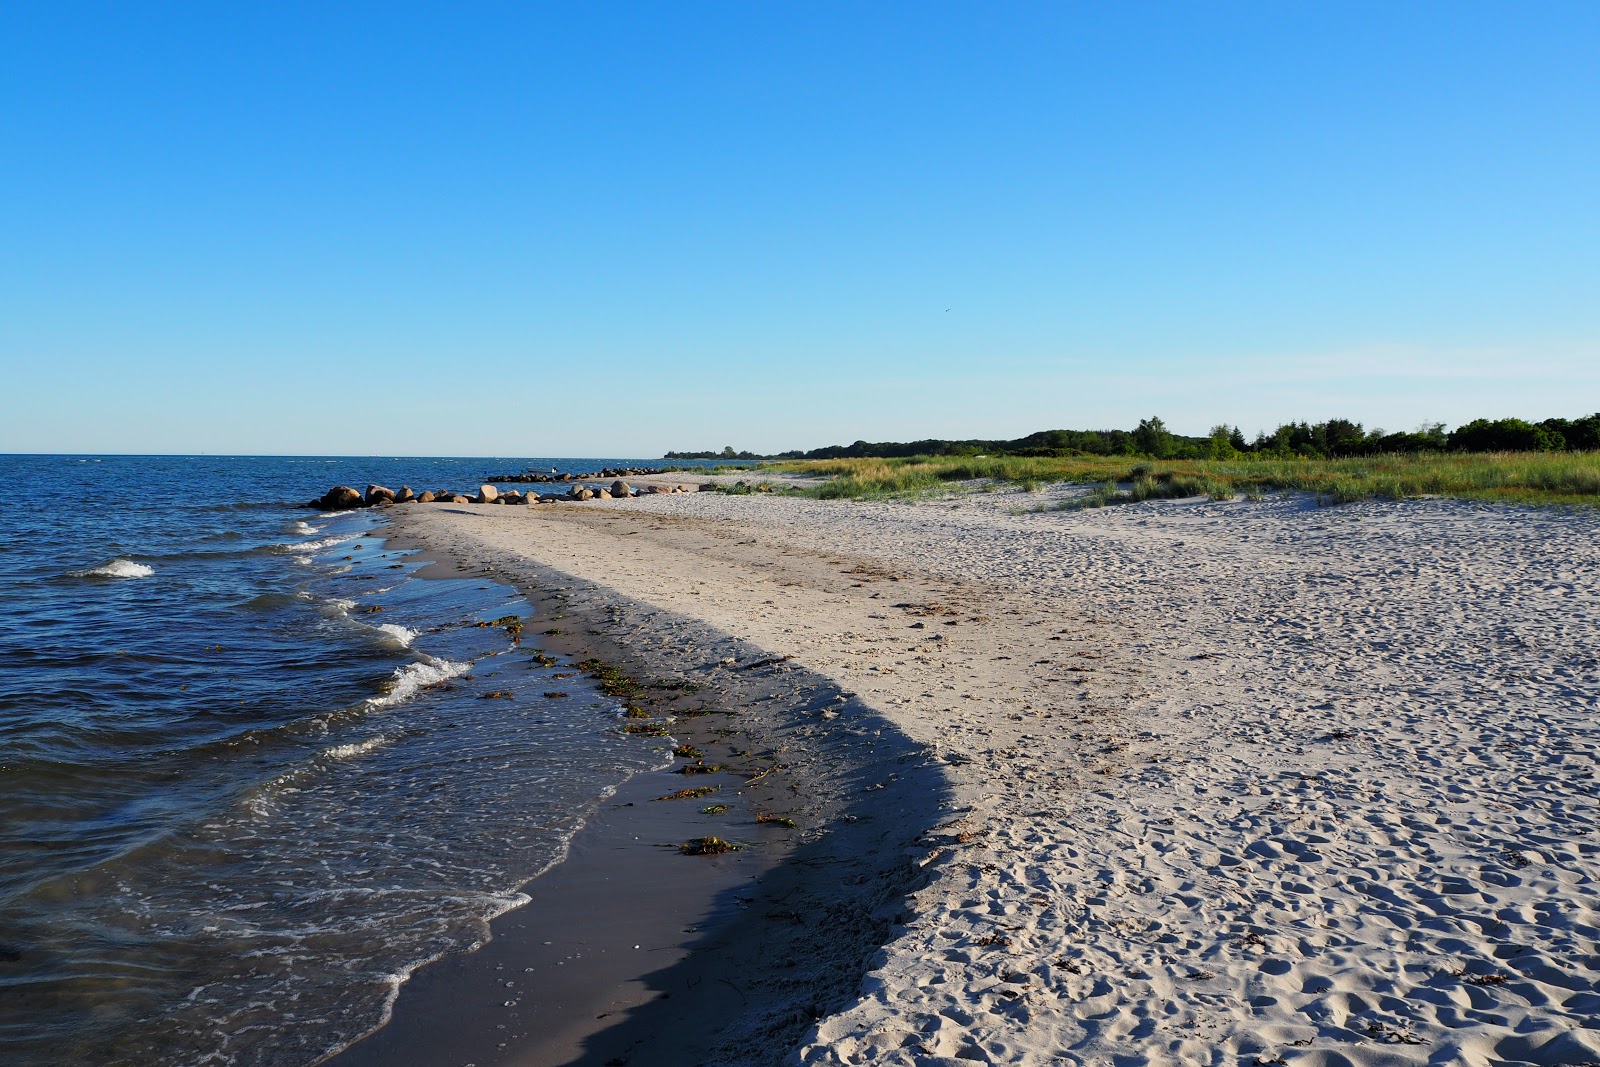 Zdjęcie Drejet Beach z powierzchnią jasny piasek i skały